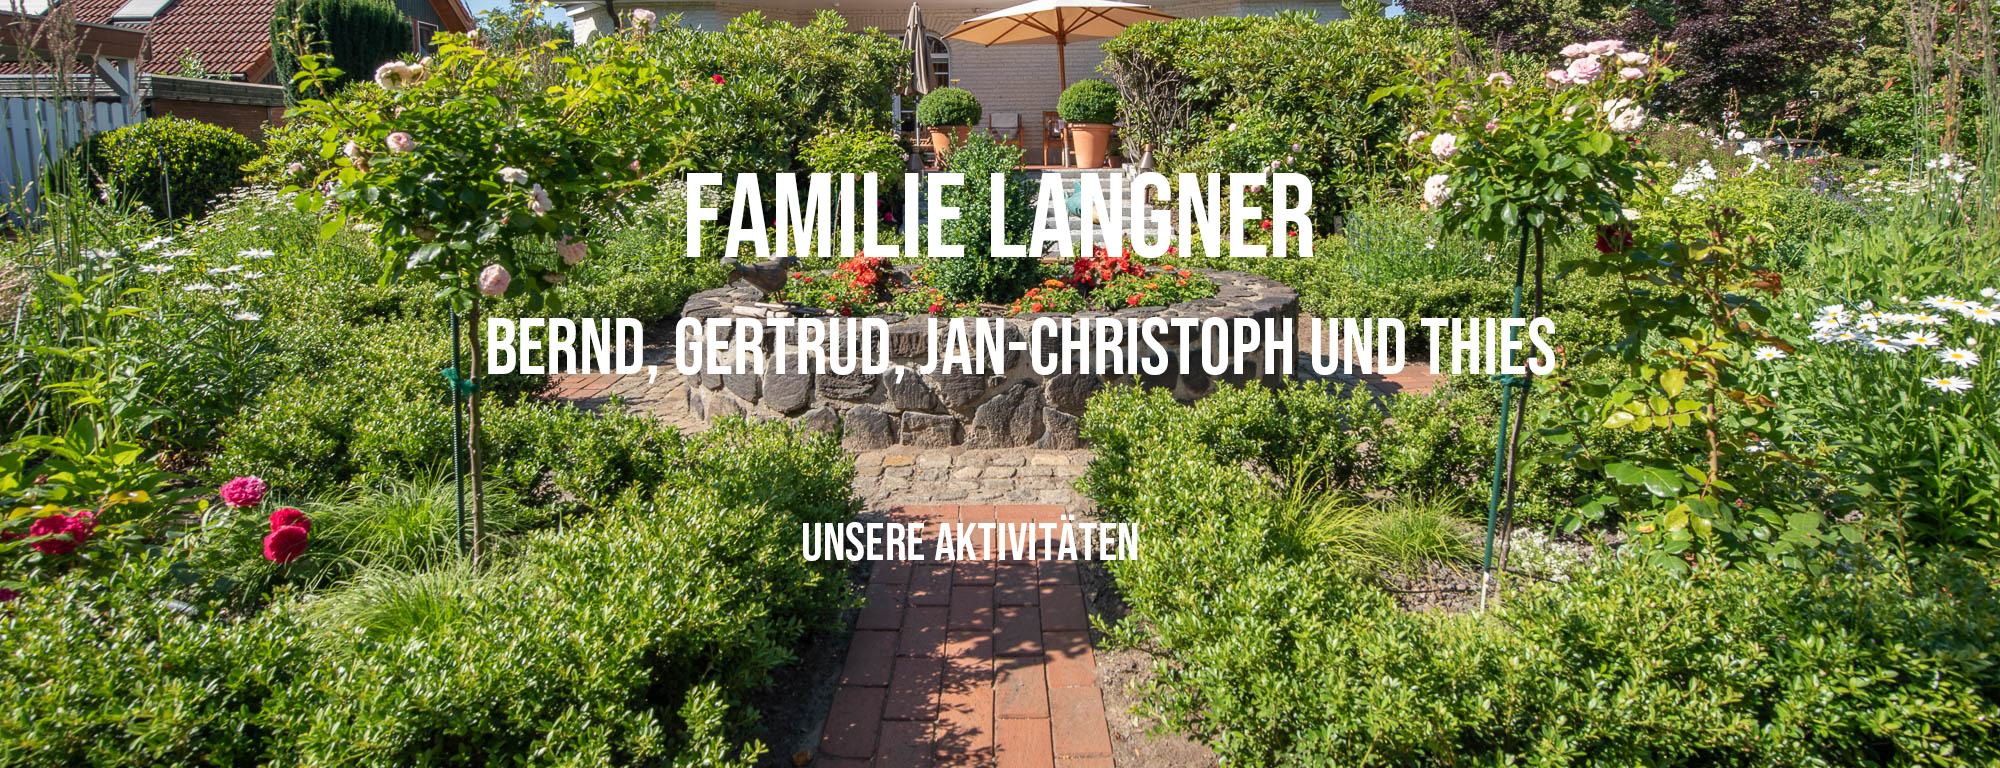 Familie Langner